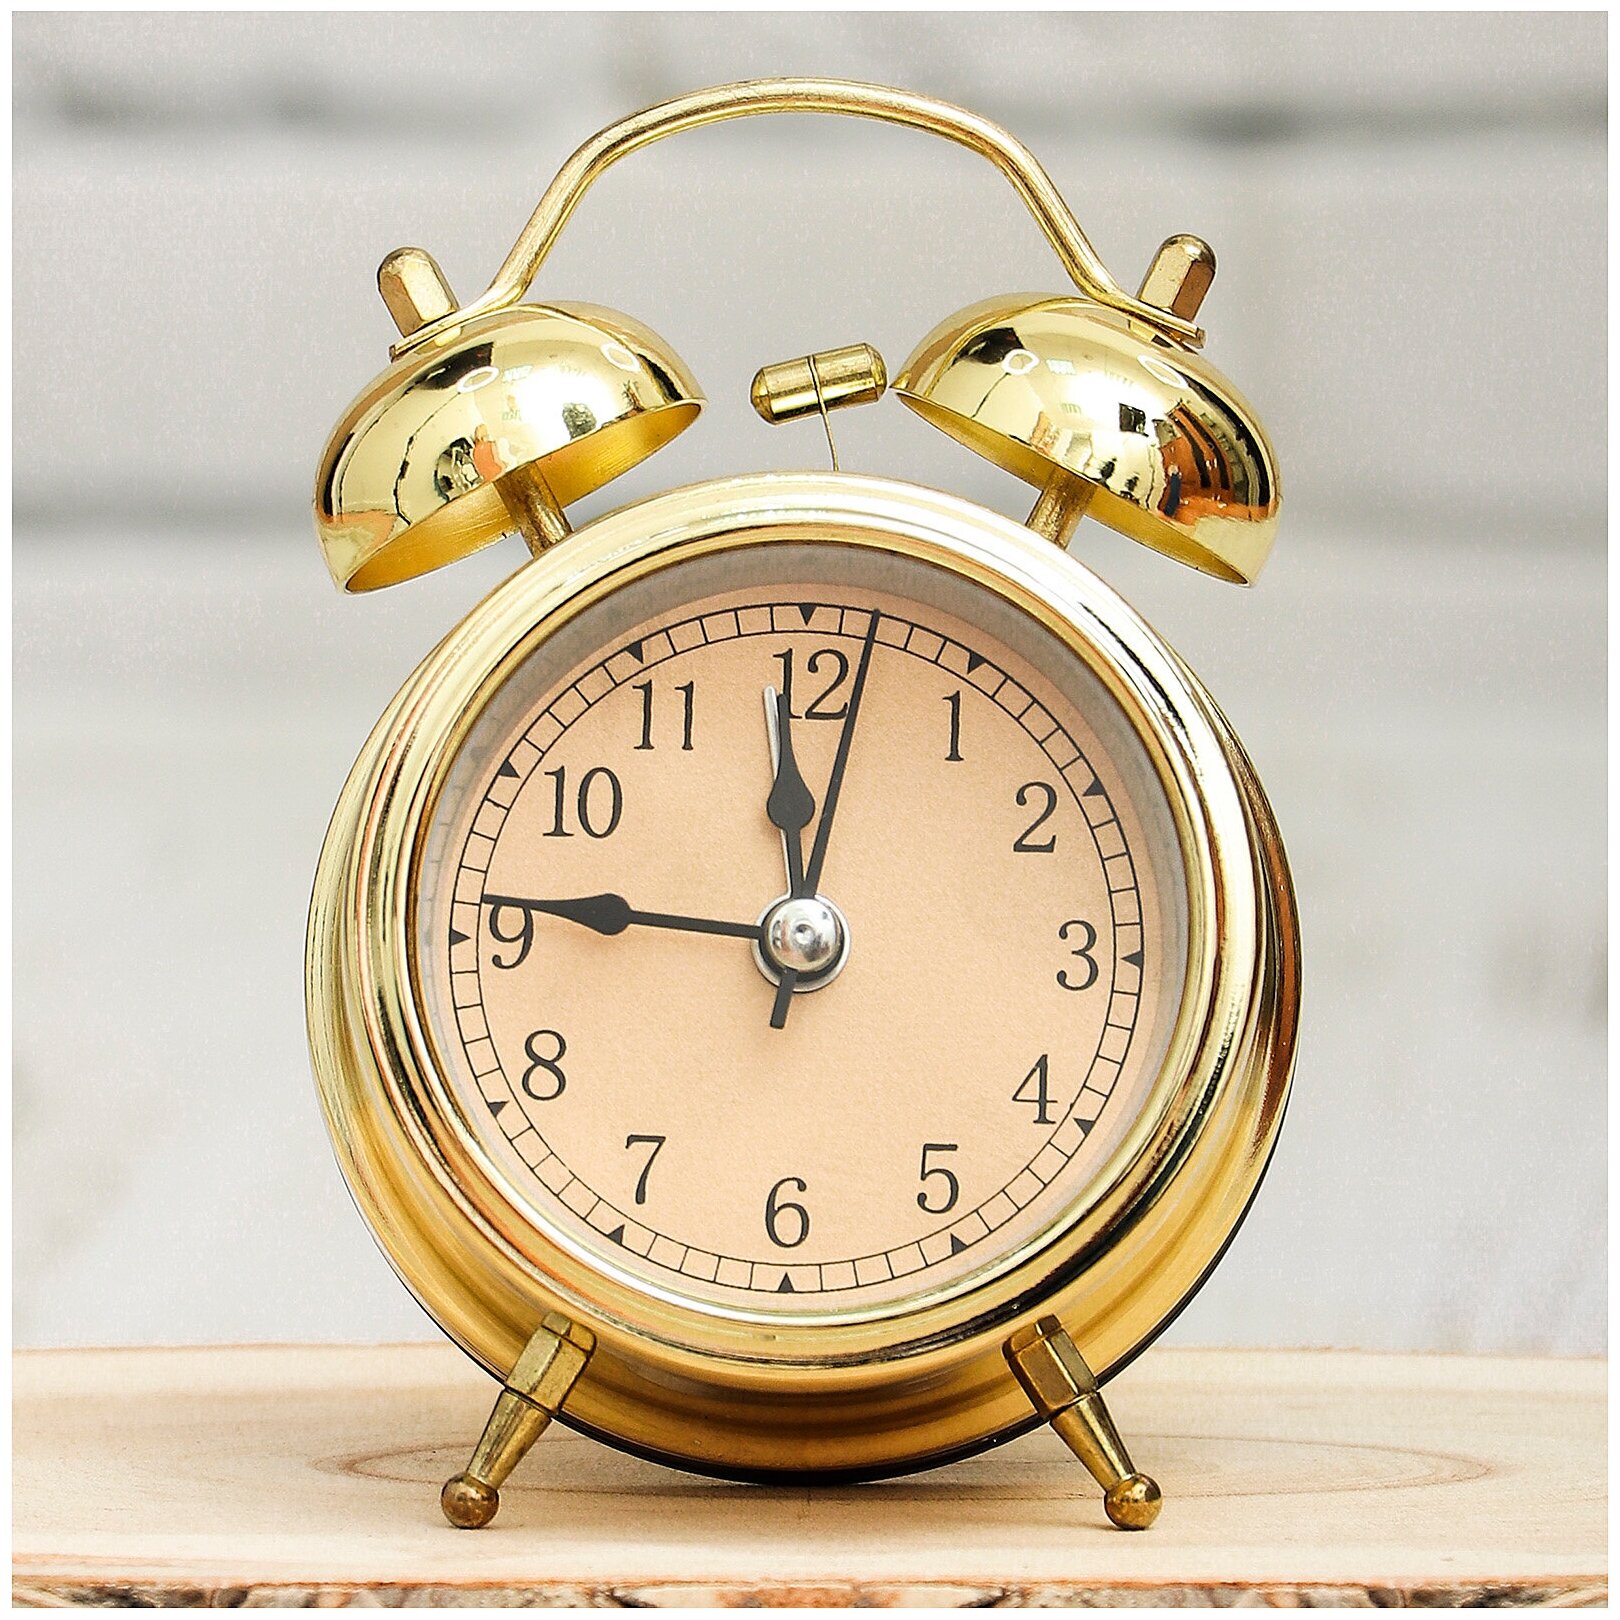 Часы будильник настольные D-7 см золотой цвет Эврика / подарок мужчине, женщине, ребенку, мальчику, сыну, девочке, дочке